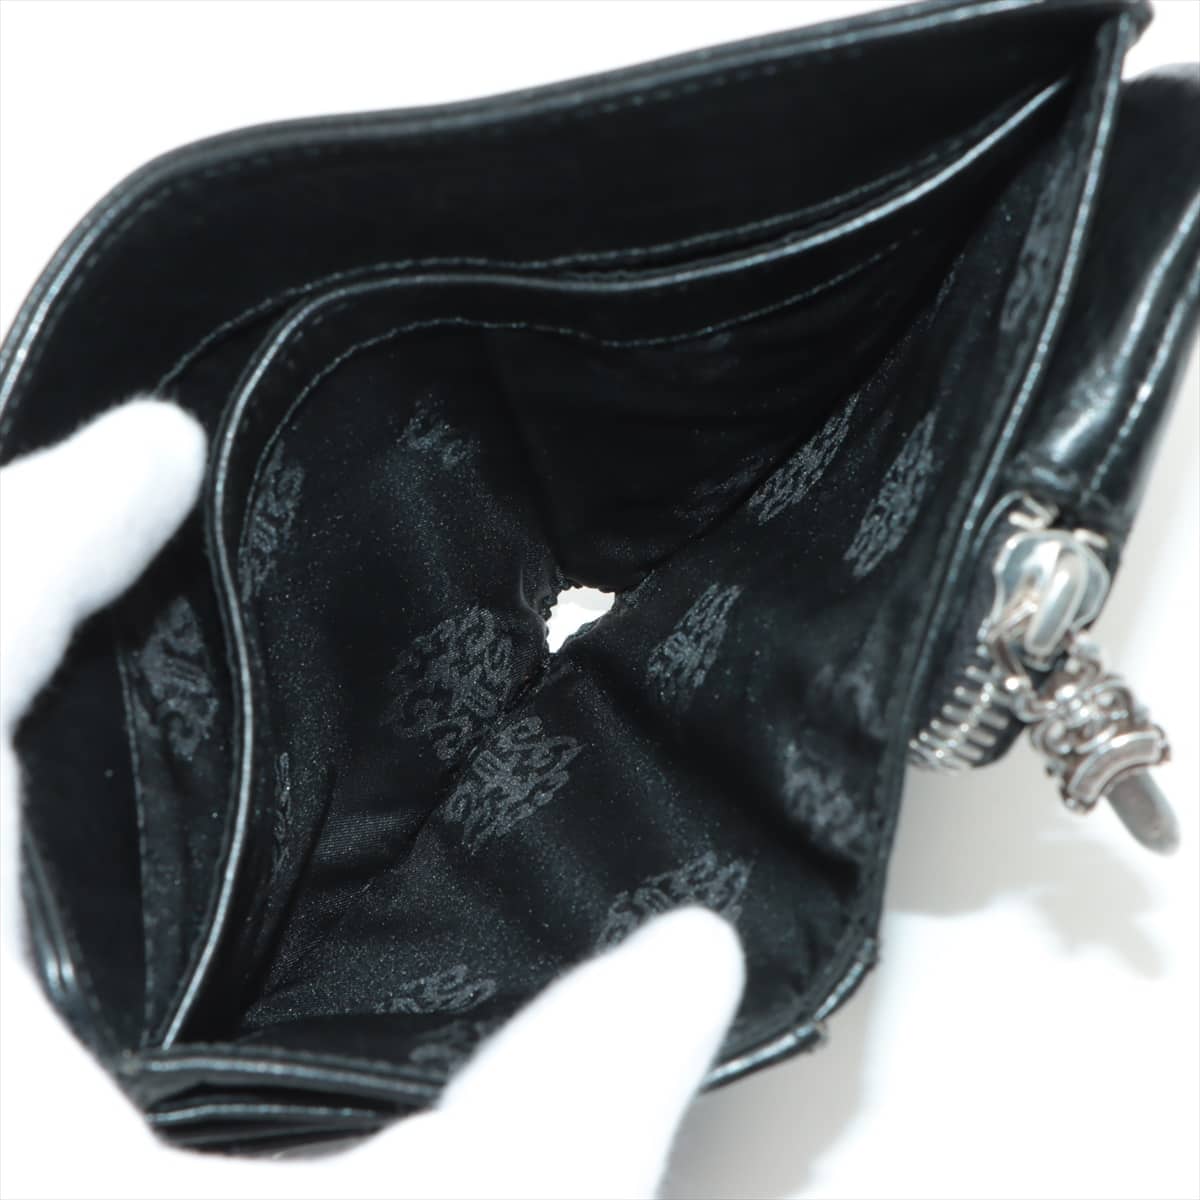 クロムハーツ ジョーイスクロール ウォレット 二つ折り財布 レザー×925 インボイスアリ ブラック ダガージップ